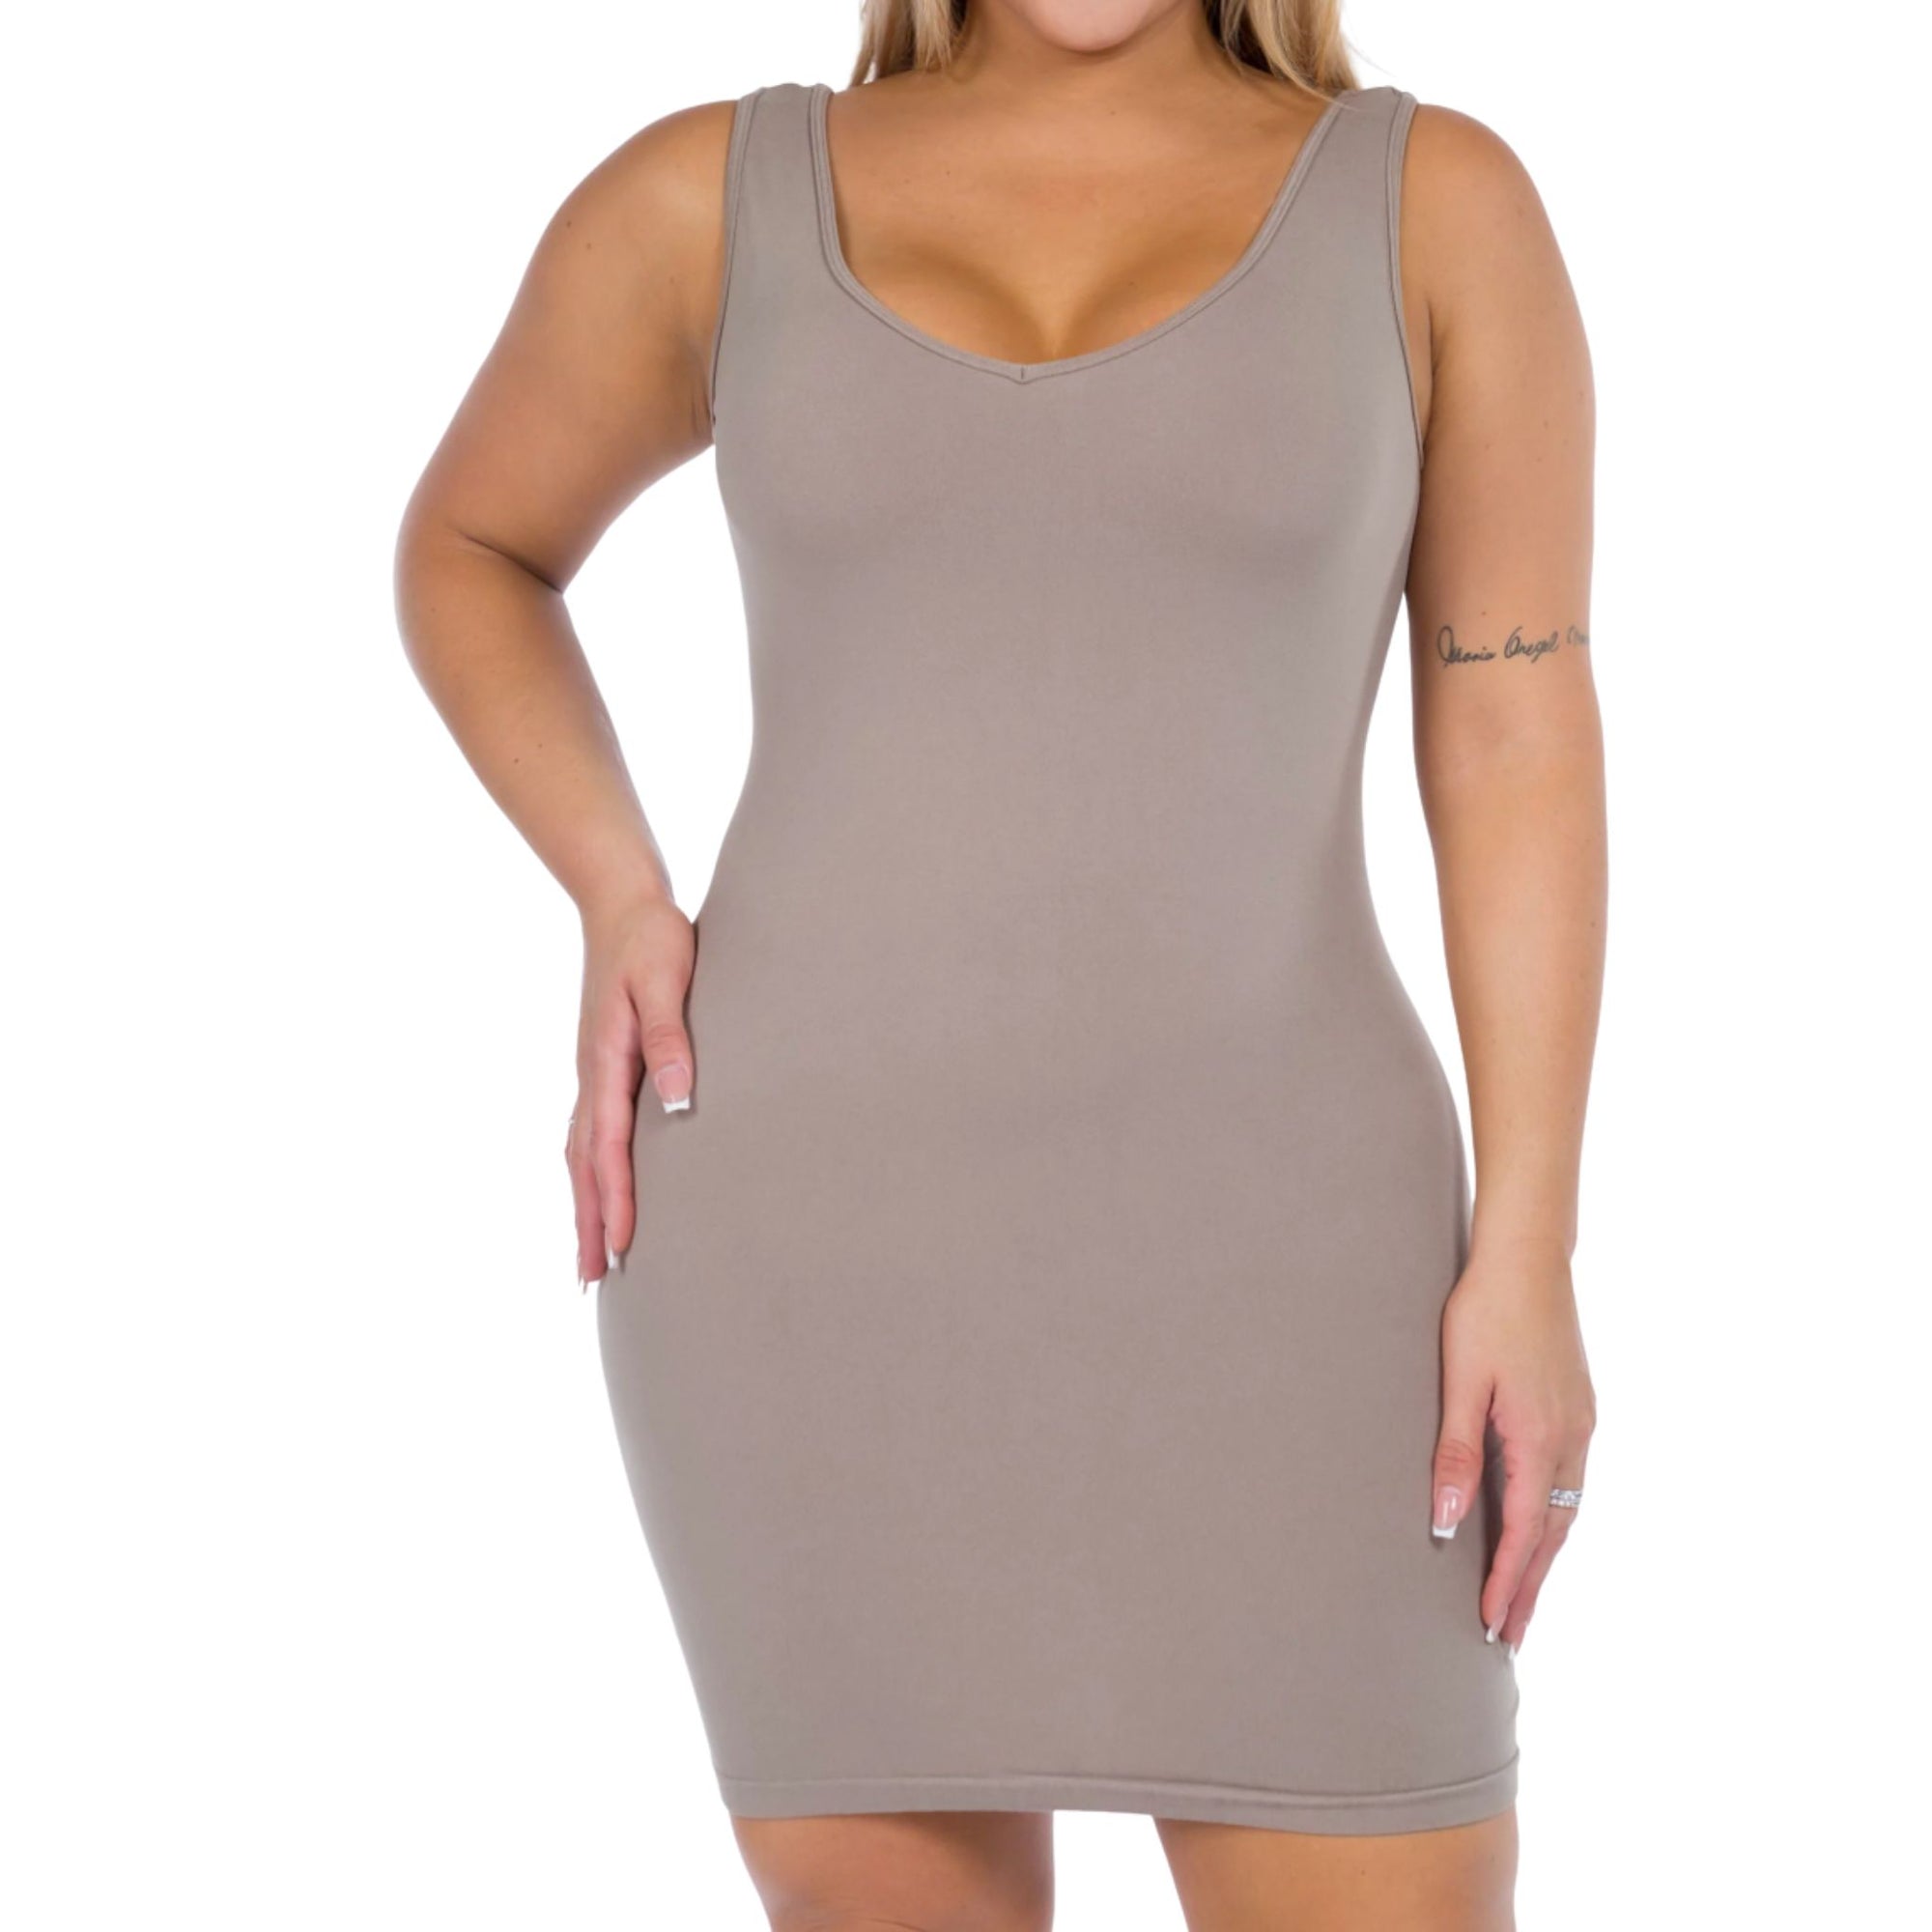 M Rena Reversible Shape Wear Tank Dress